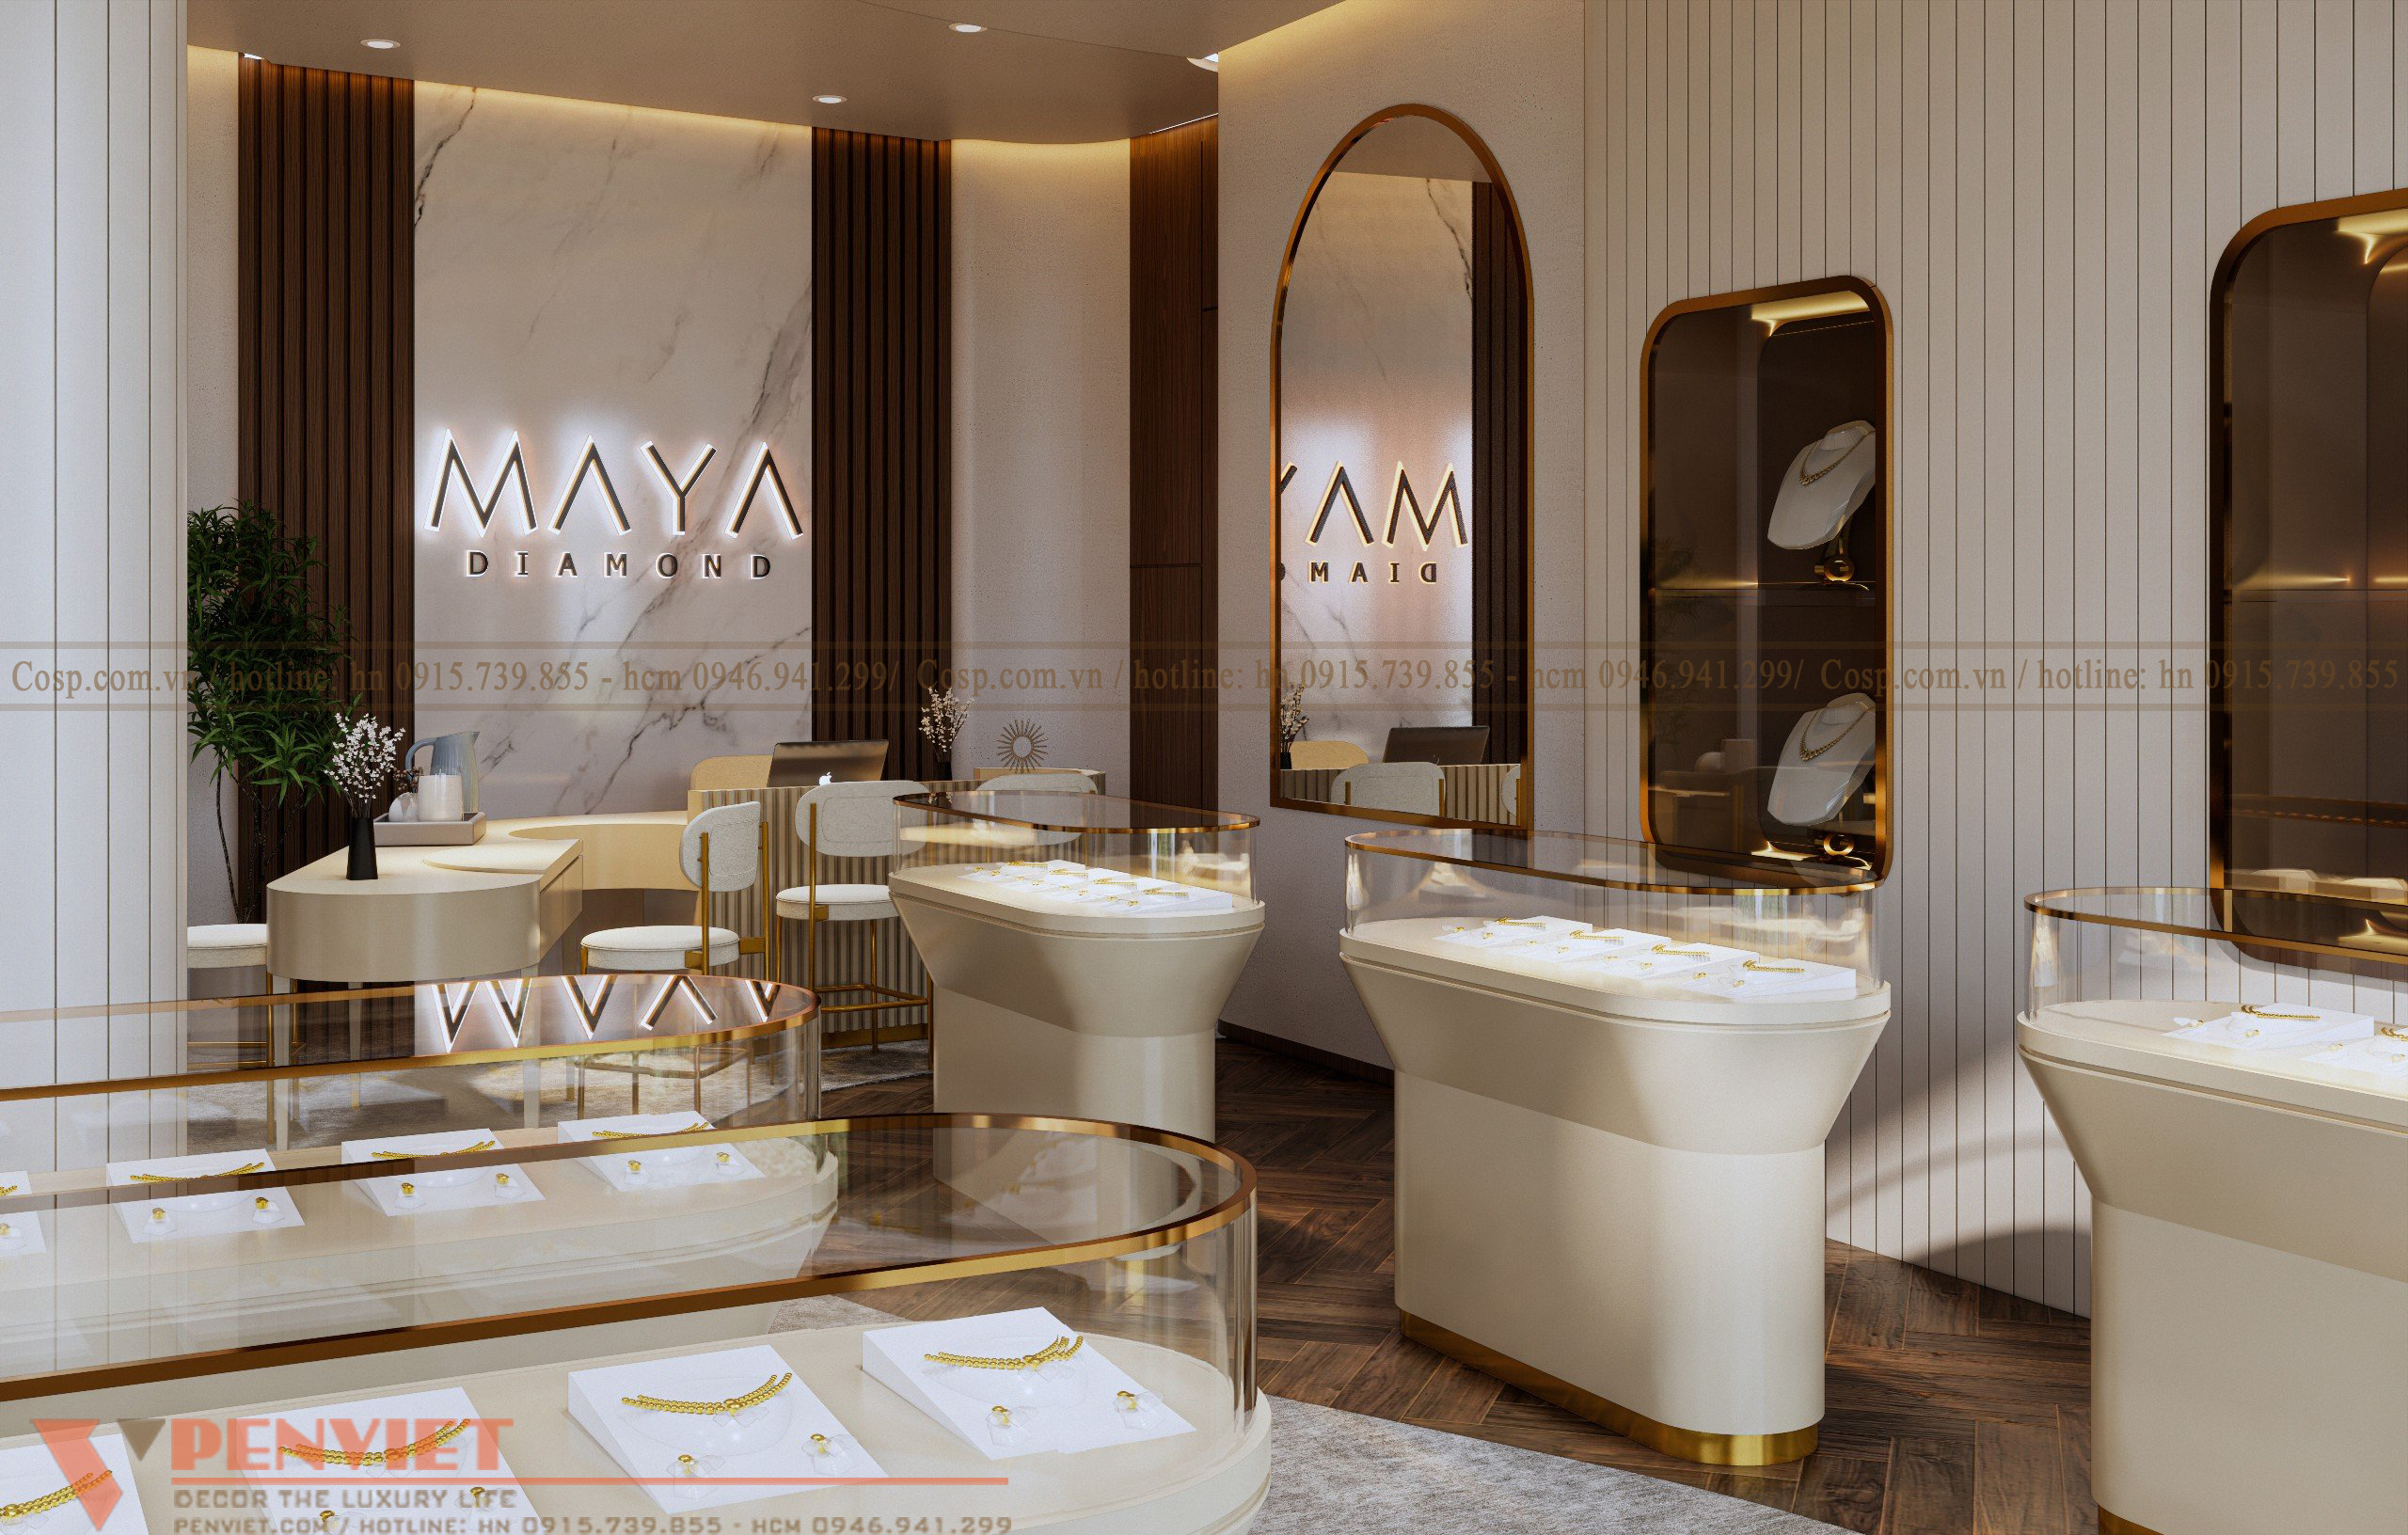 Thiết kế tiệm vàng maya diamond